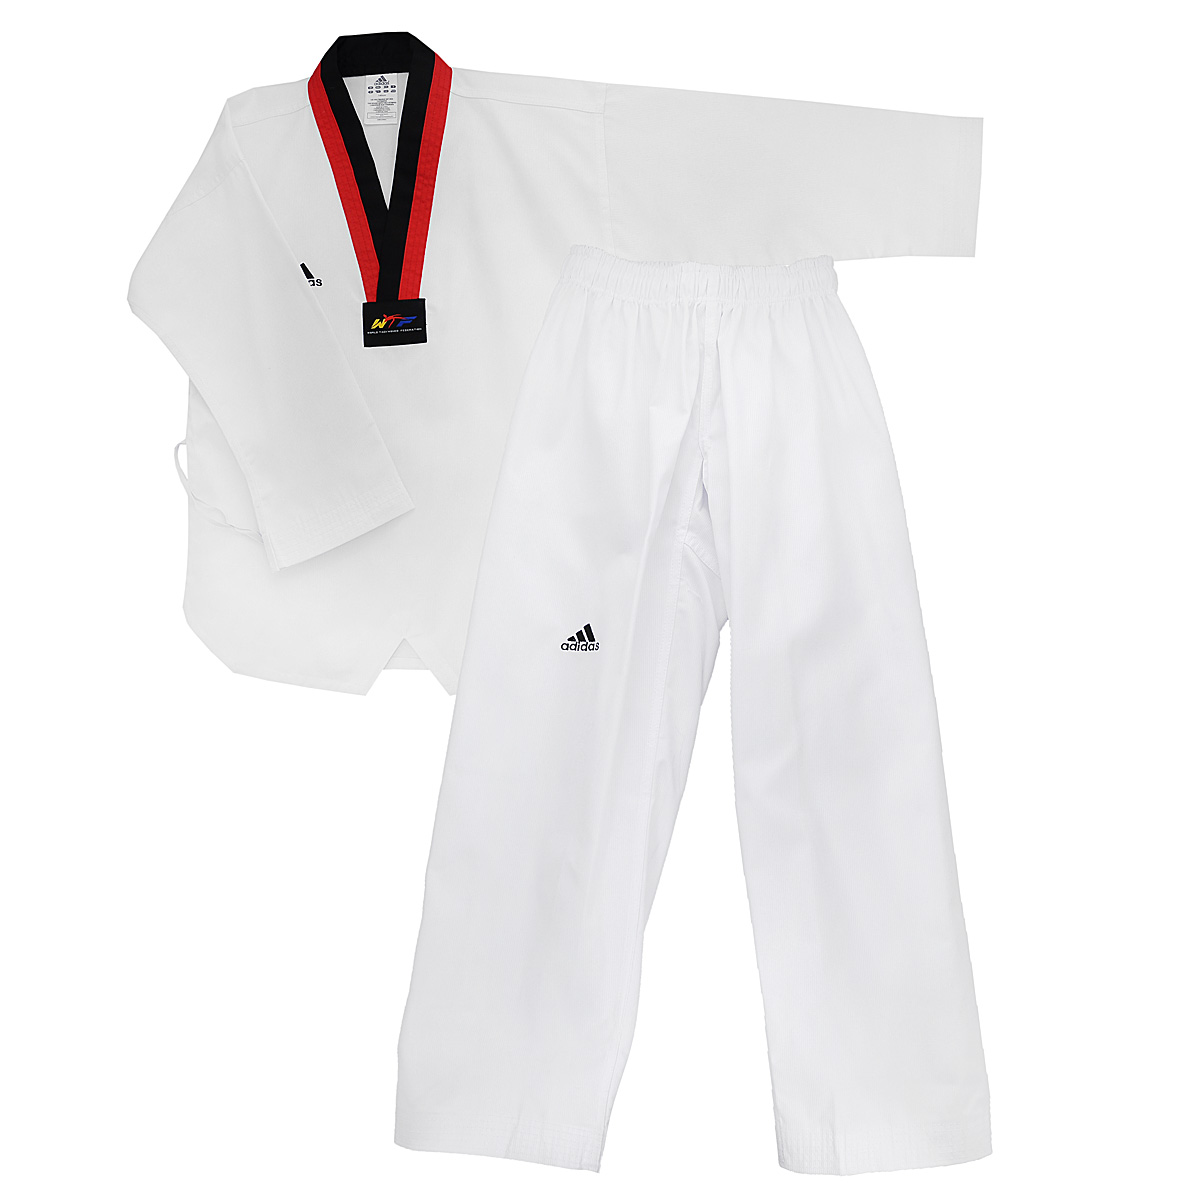 Кимоно для тхэквондо adidas Taekwondo Adi-Start, цвет: белый, черный, красный. adiTS01-WH/RD-BK. Размер 110